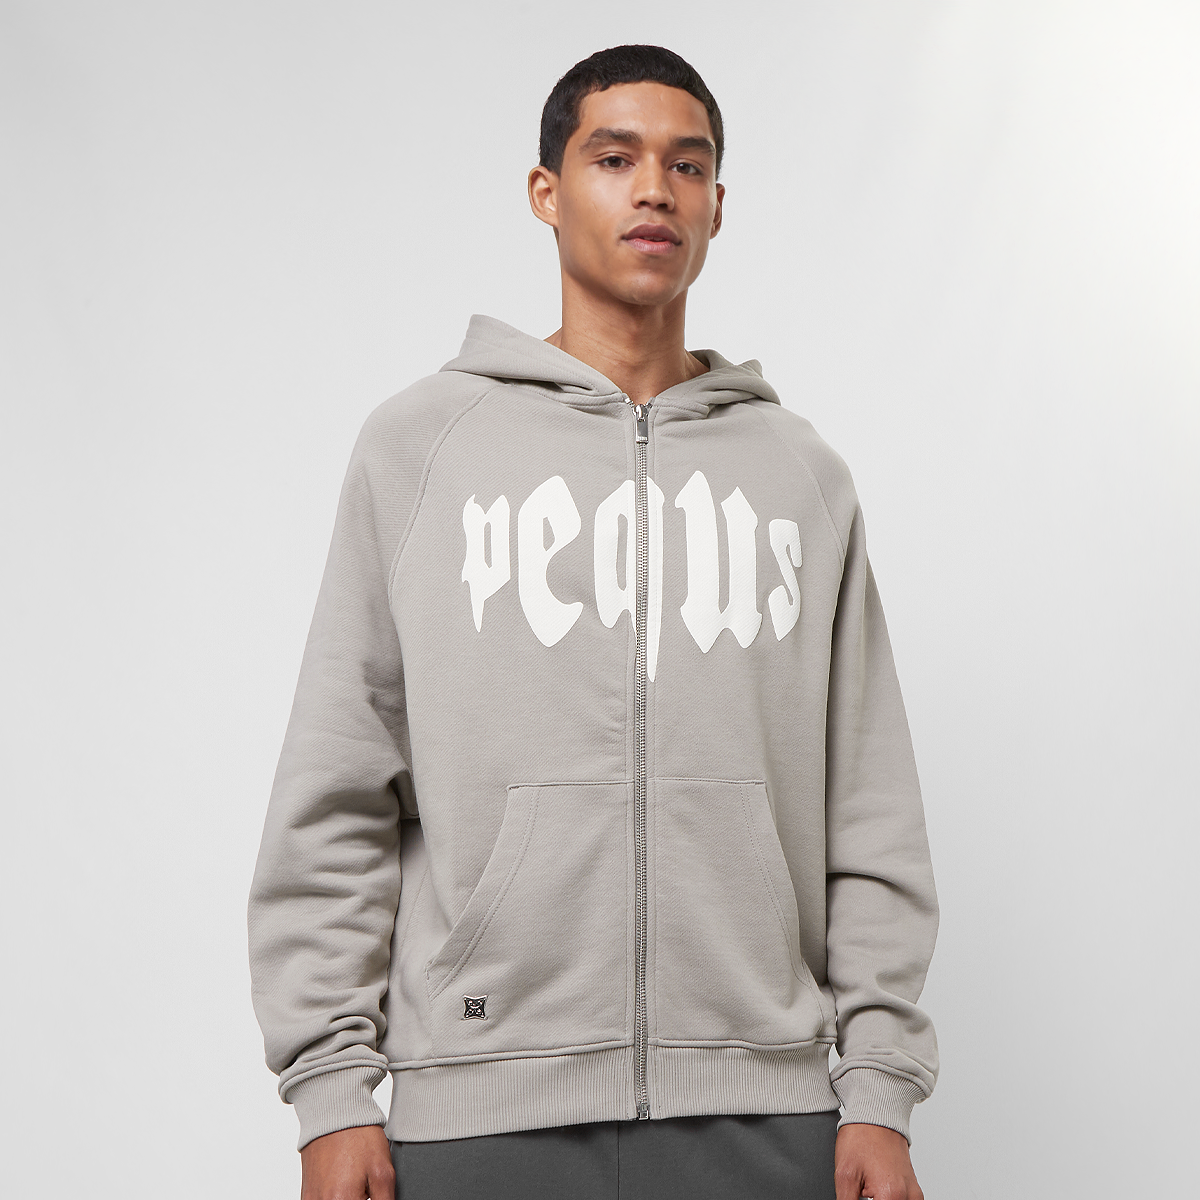 Pequs Mythic Logo Zip-hoodie Hooded vesten Heren dark greige maat: XS beschikbare maaten:XS S M L XL